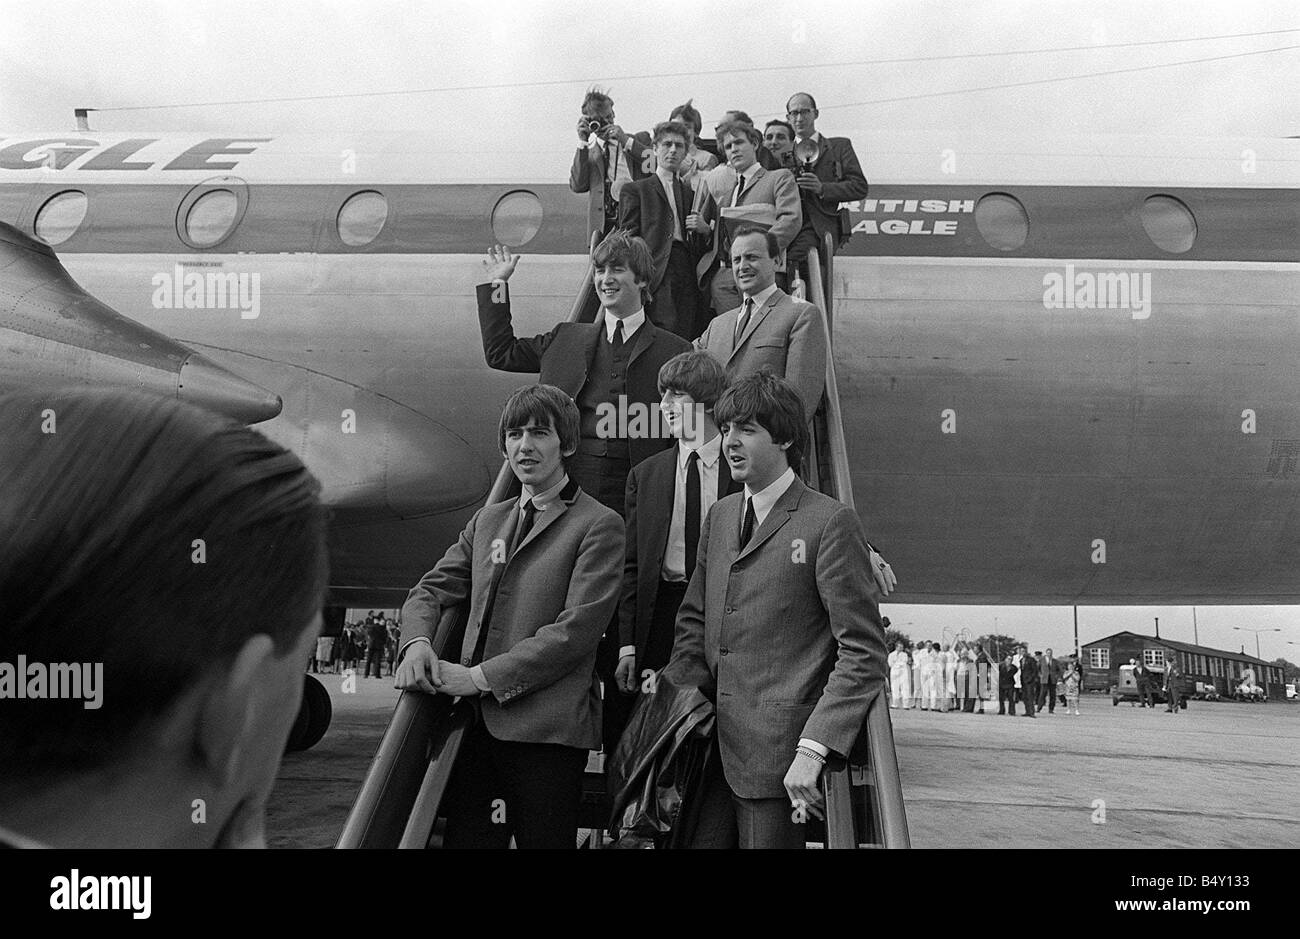 Gruppo pop The Beatles Luglio 1964 John Lennon Paul McCartney George Harrison Ringo Starr dei Beatles in Liverpool lasciando il velivolo in aeroporto di Liverpool per la premiere del nord di una giornata intensa di notte Foto Stock